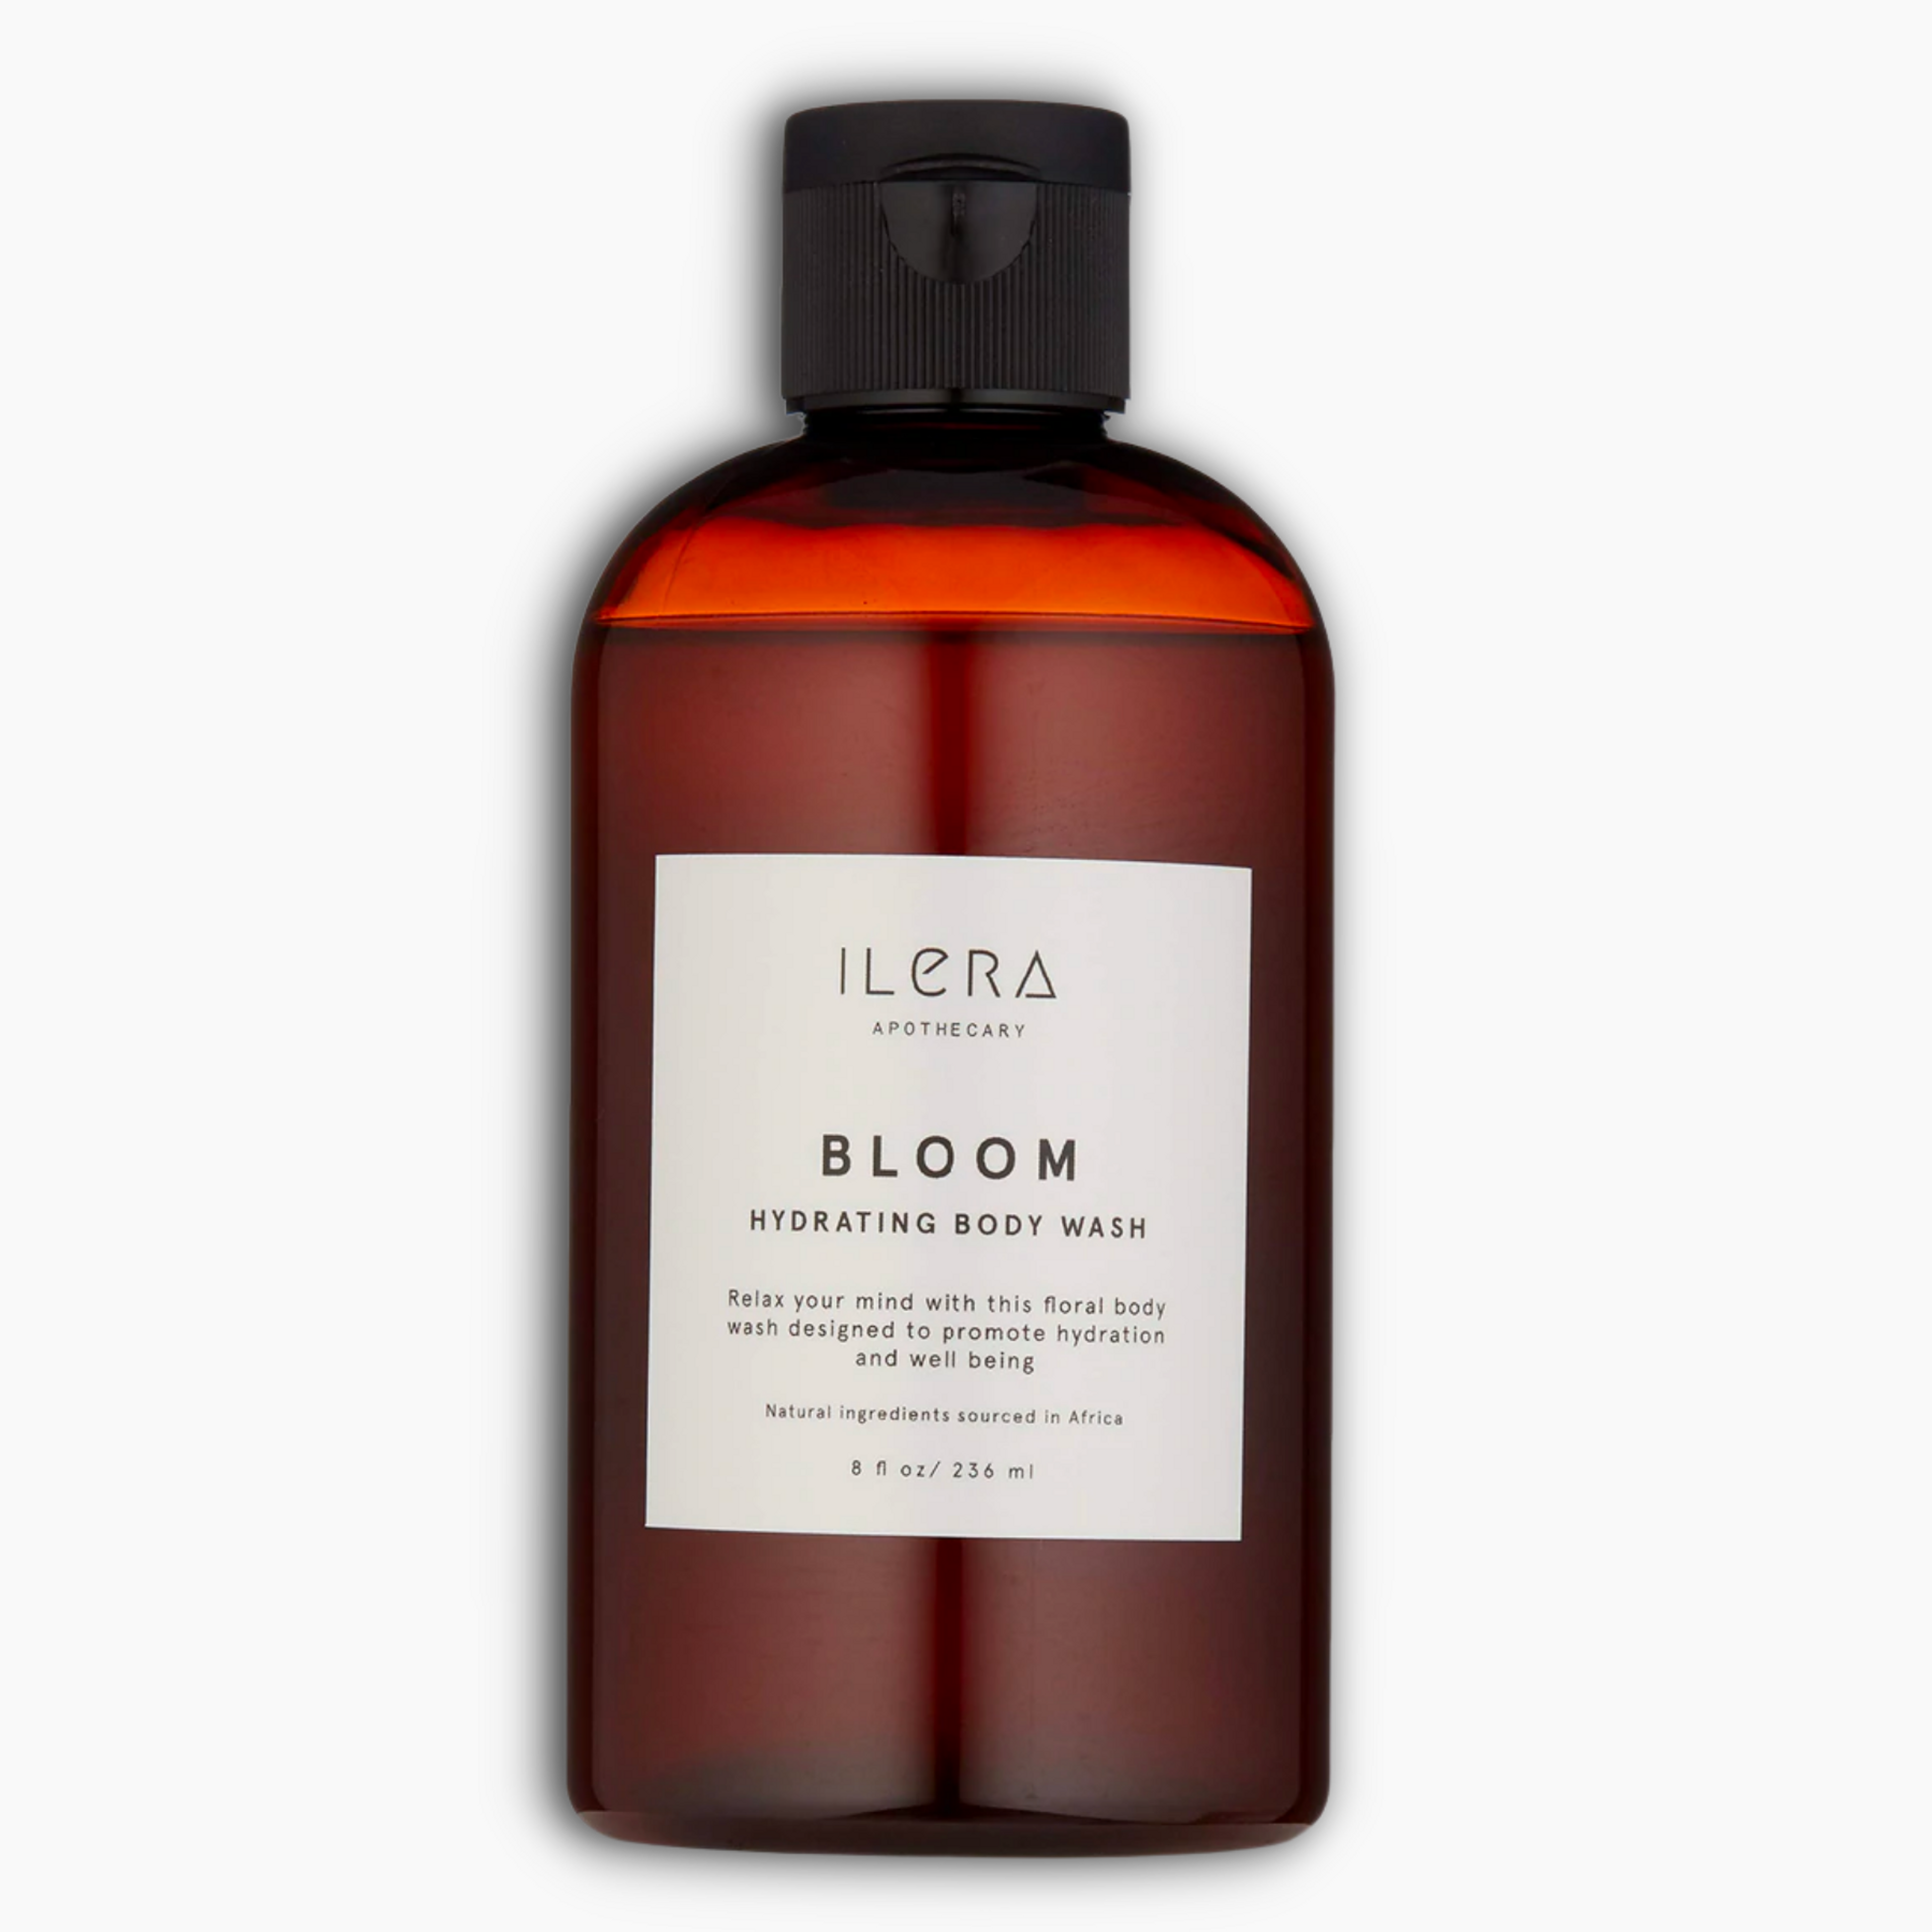 Bloom Hydrating Body Wash